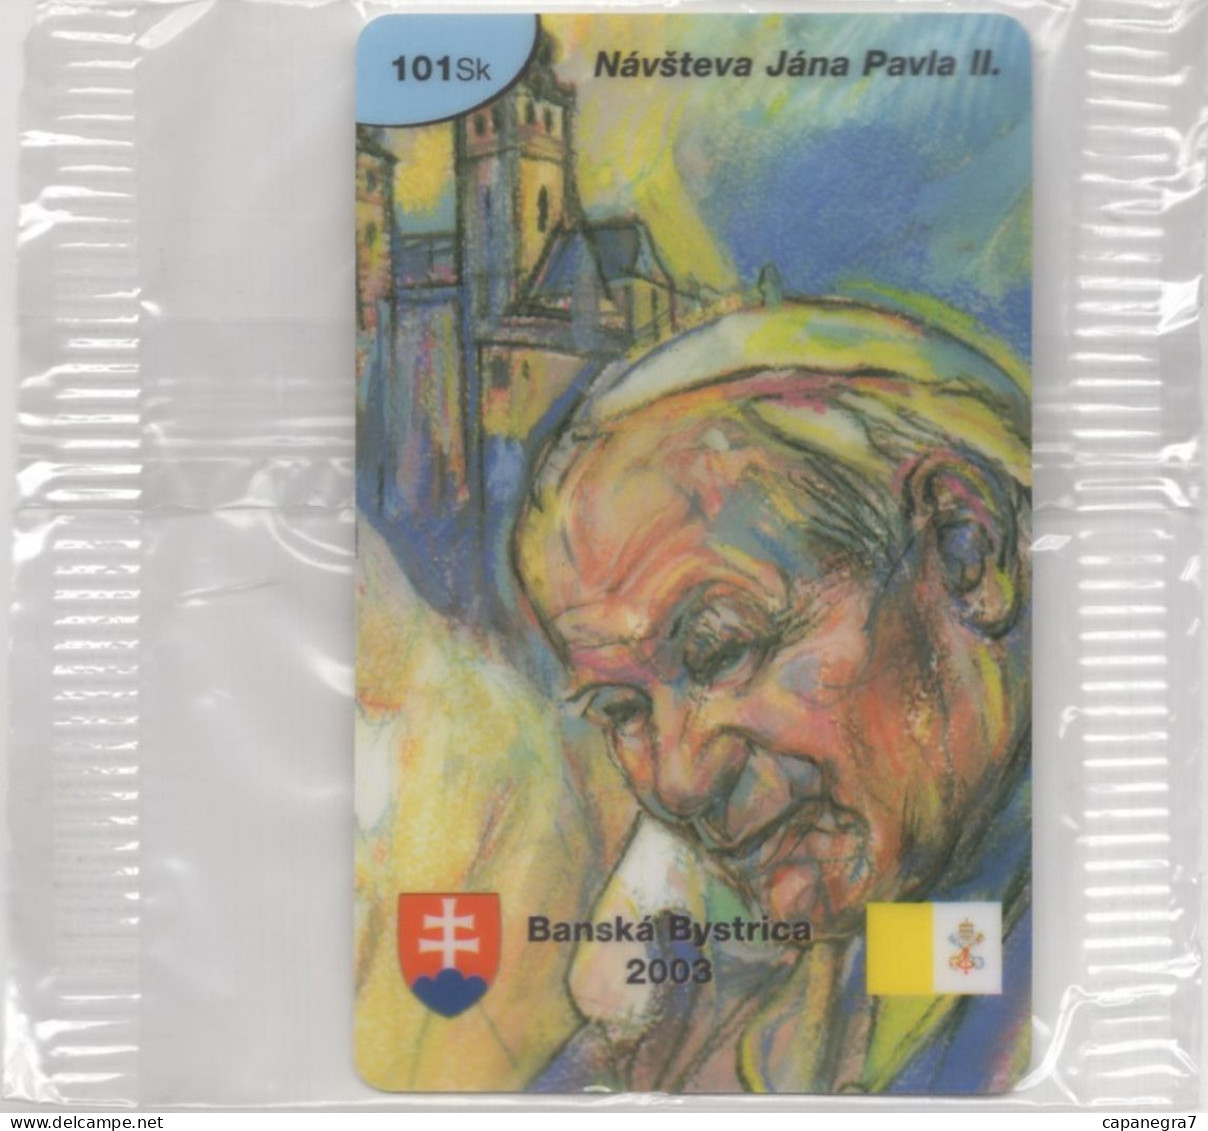 Pope John Paulu II. - Banská Bystica 2003, Prepaid Calling Card, 101 Sk., 1.250 Pc., GlobalIPhone, Slovak, Mint, Packed - Slowakije